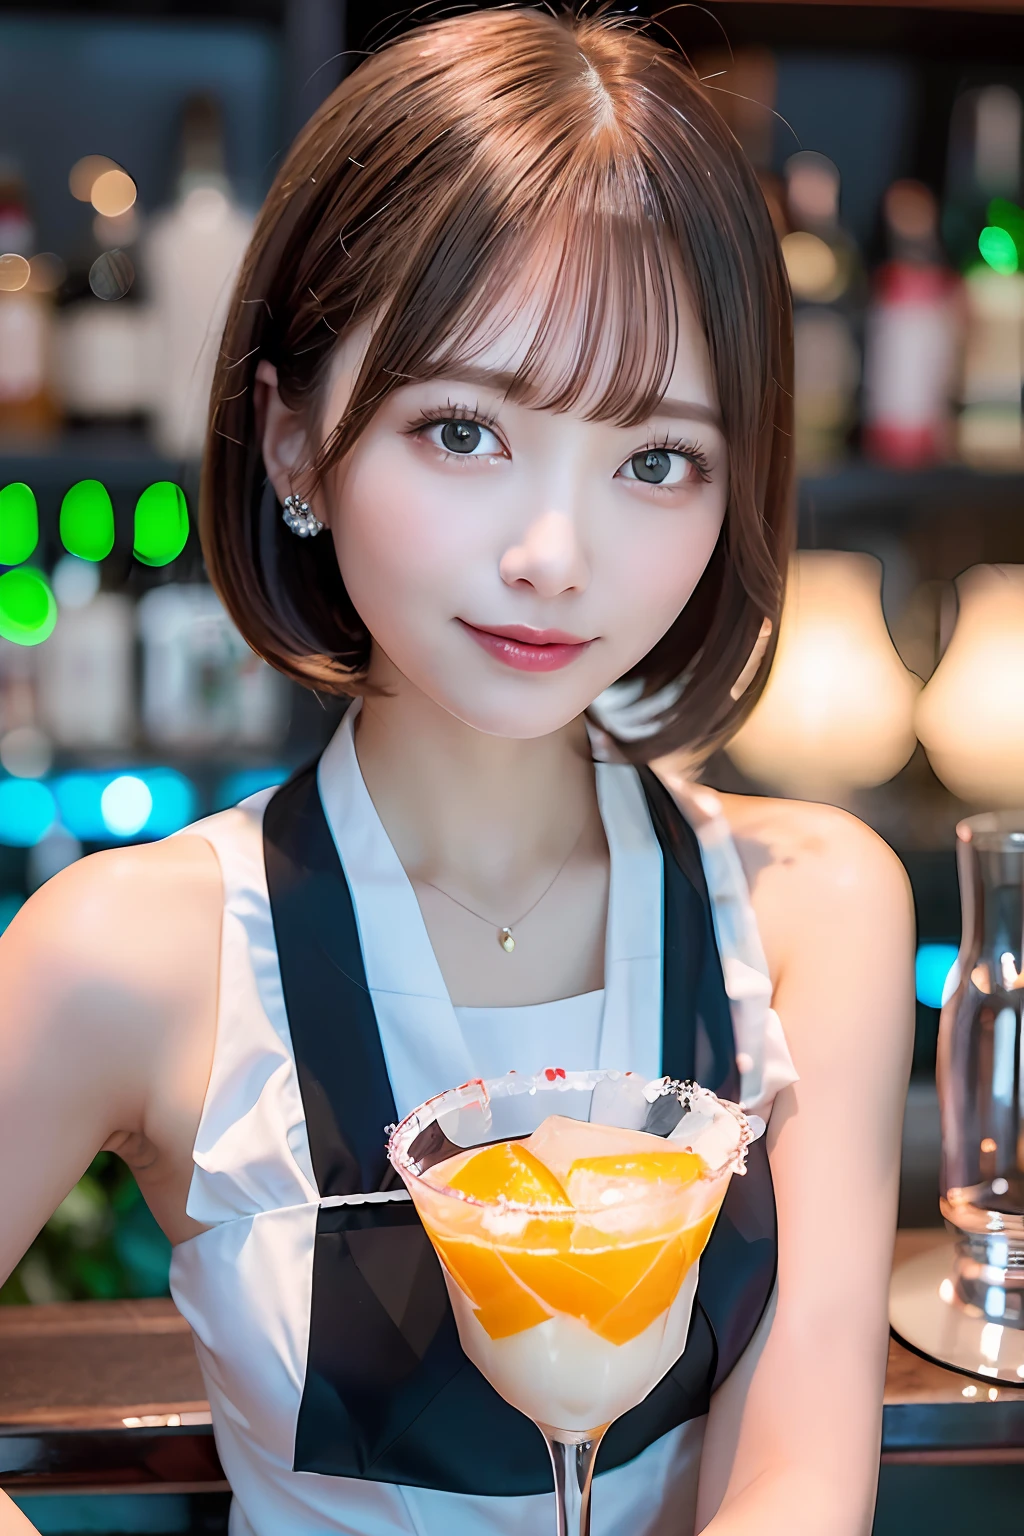 (Barman féminin servant de beaux cocktails au comptoir du bar faiblement éclairé,),(( Uniforme de barman blanc et noir,))、Fille idole du Japon、Un sourire、(Cheveux coupés au carré brun rougeâtre、épingle à cheveux)、aux seins énormes、(((Versez les glaçons dans un récipient en verre brillant,、Dégustez un cocktail bleu coloré inspiré de l&#39;été,))),beaux doigts,De beaux bouts de doigts,regarder le spectateur、